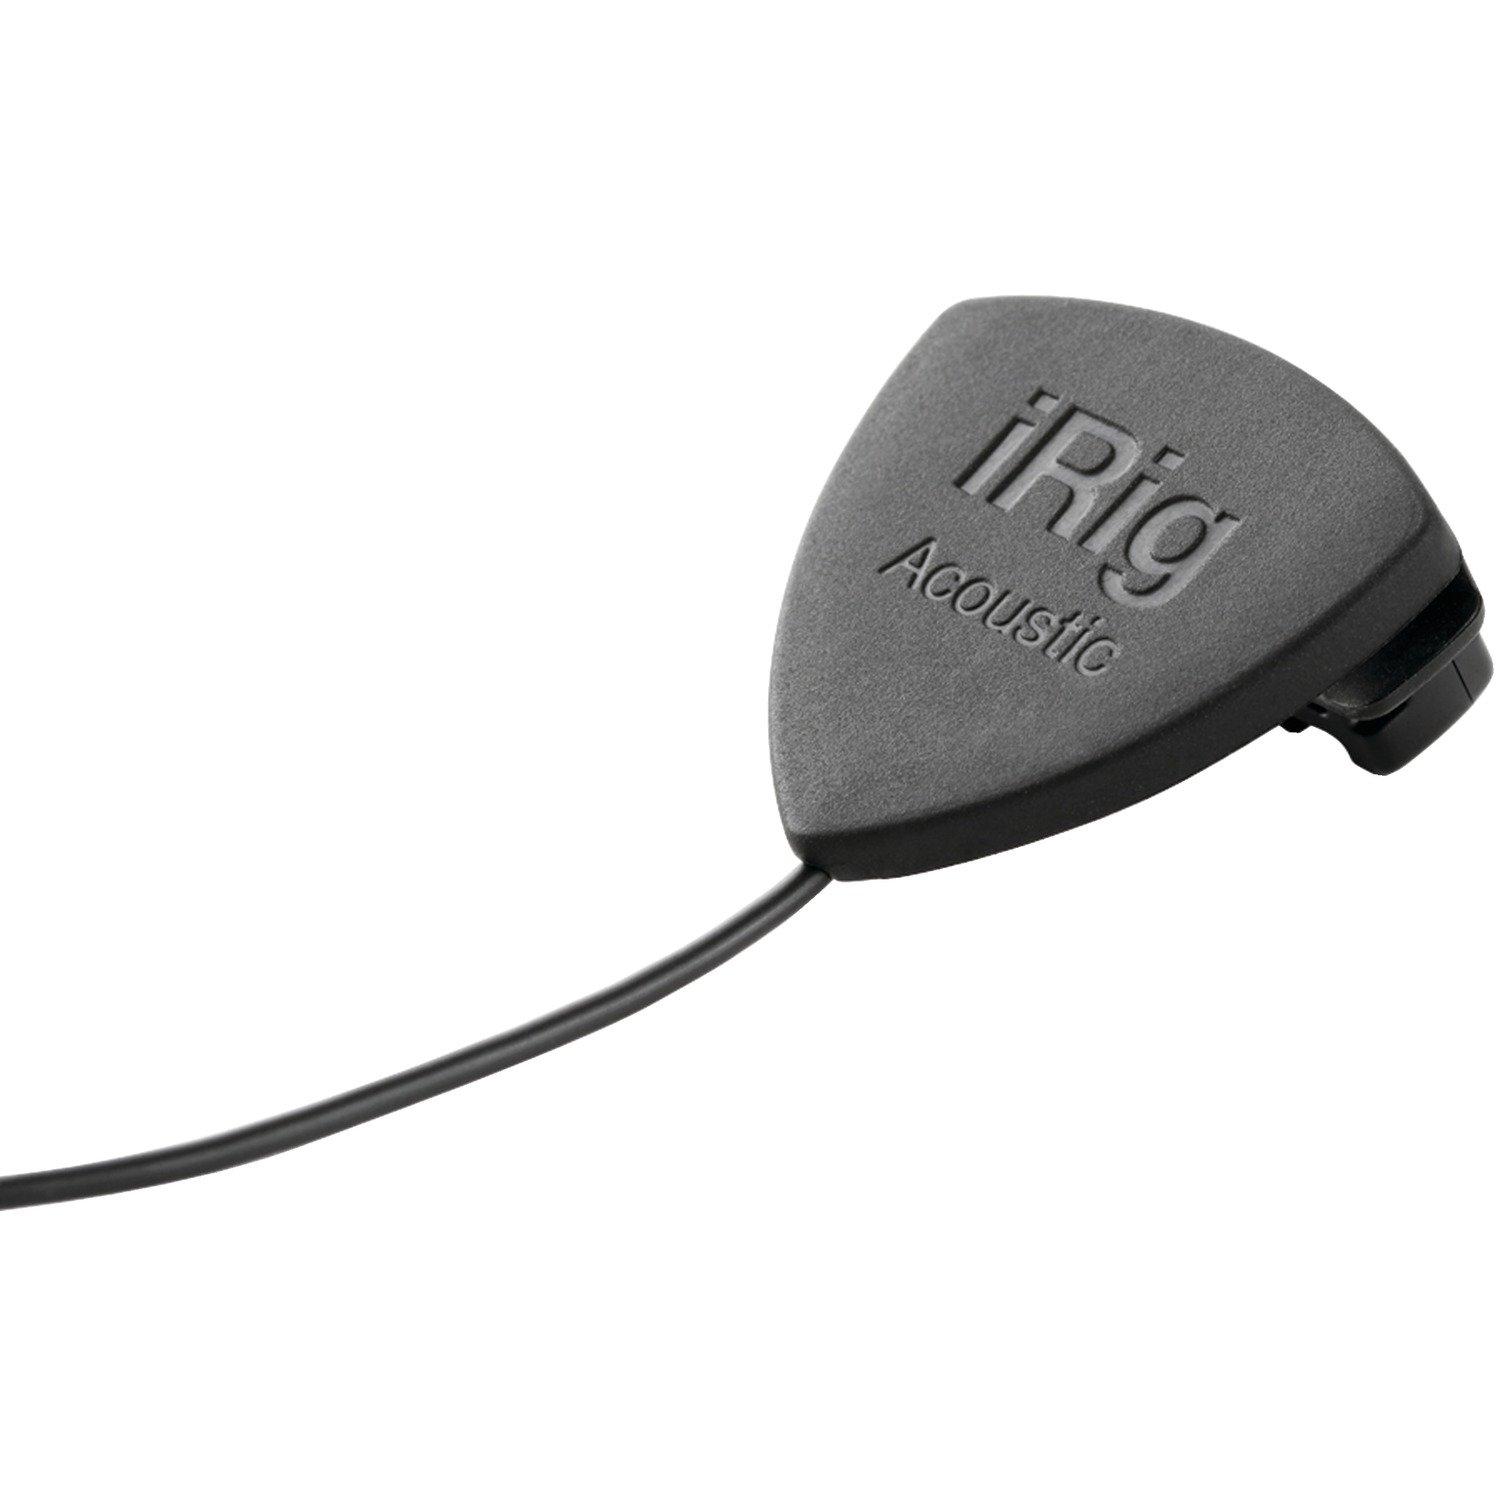 Irig Acoustic Guitar Microphone Gamestop